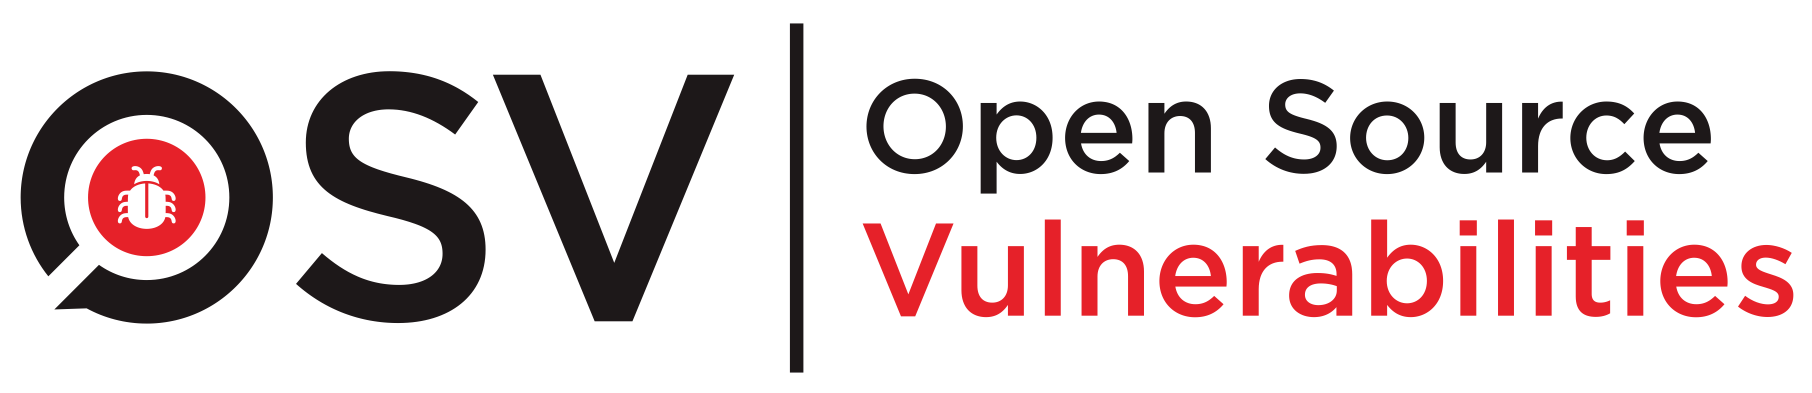 OSV-Scanner logo